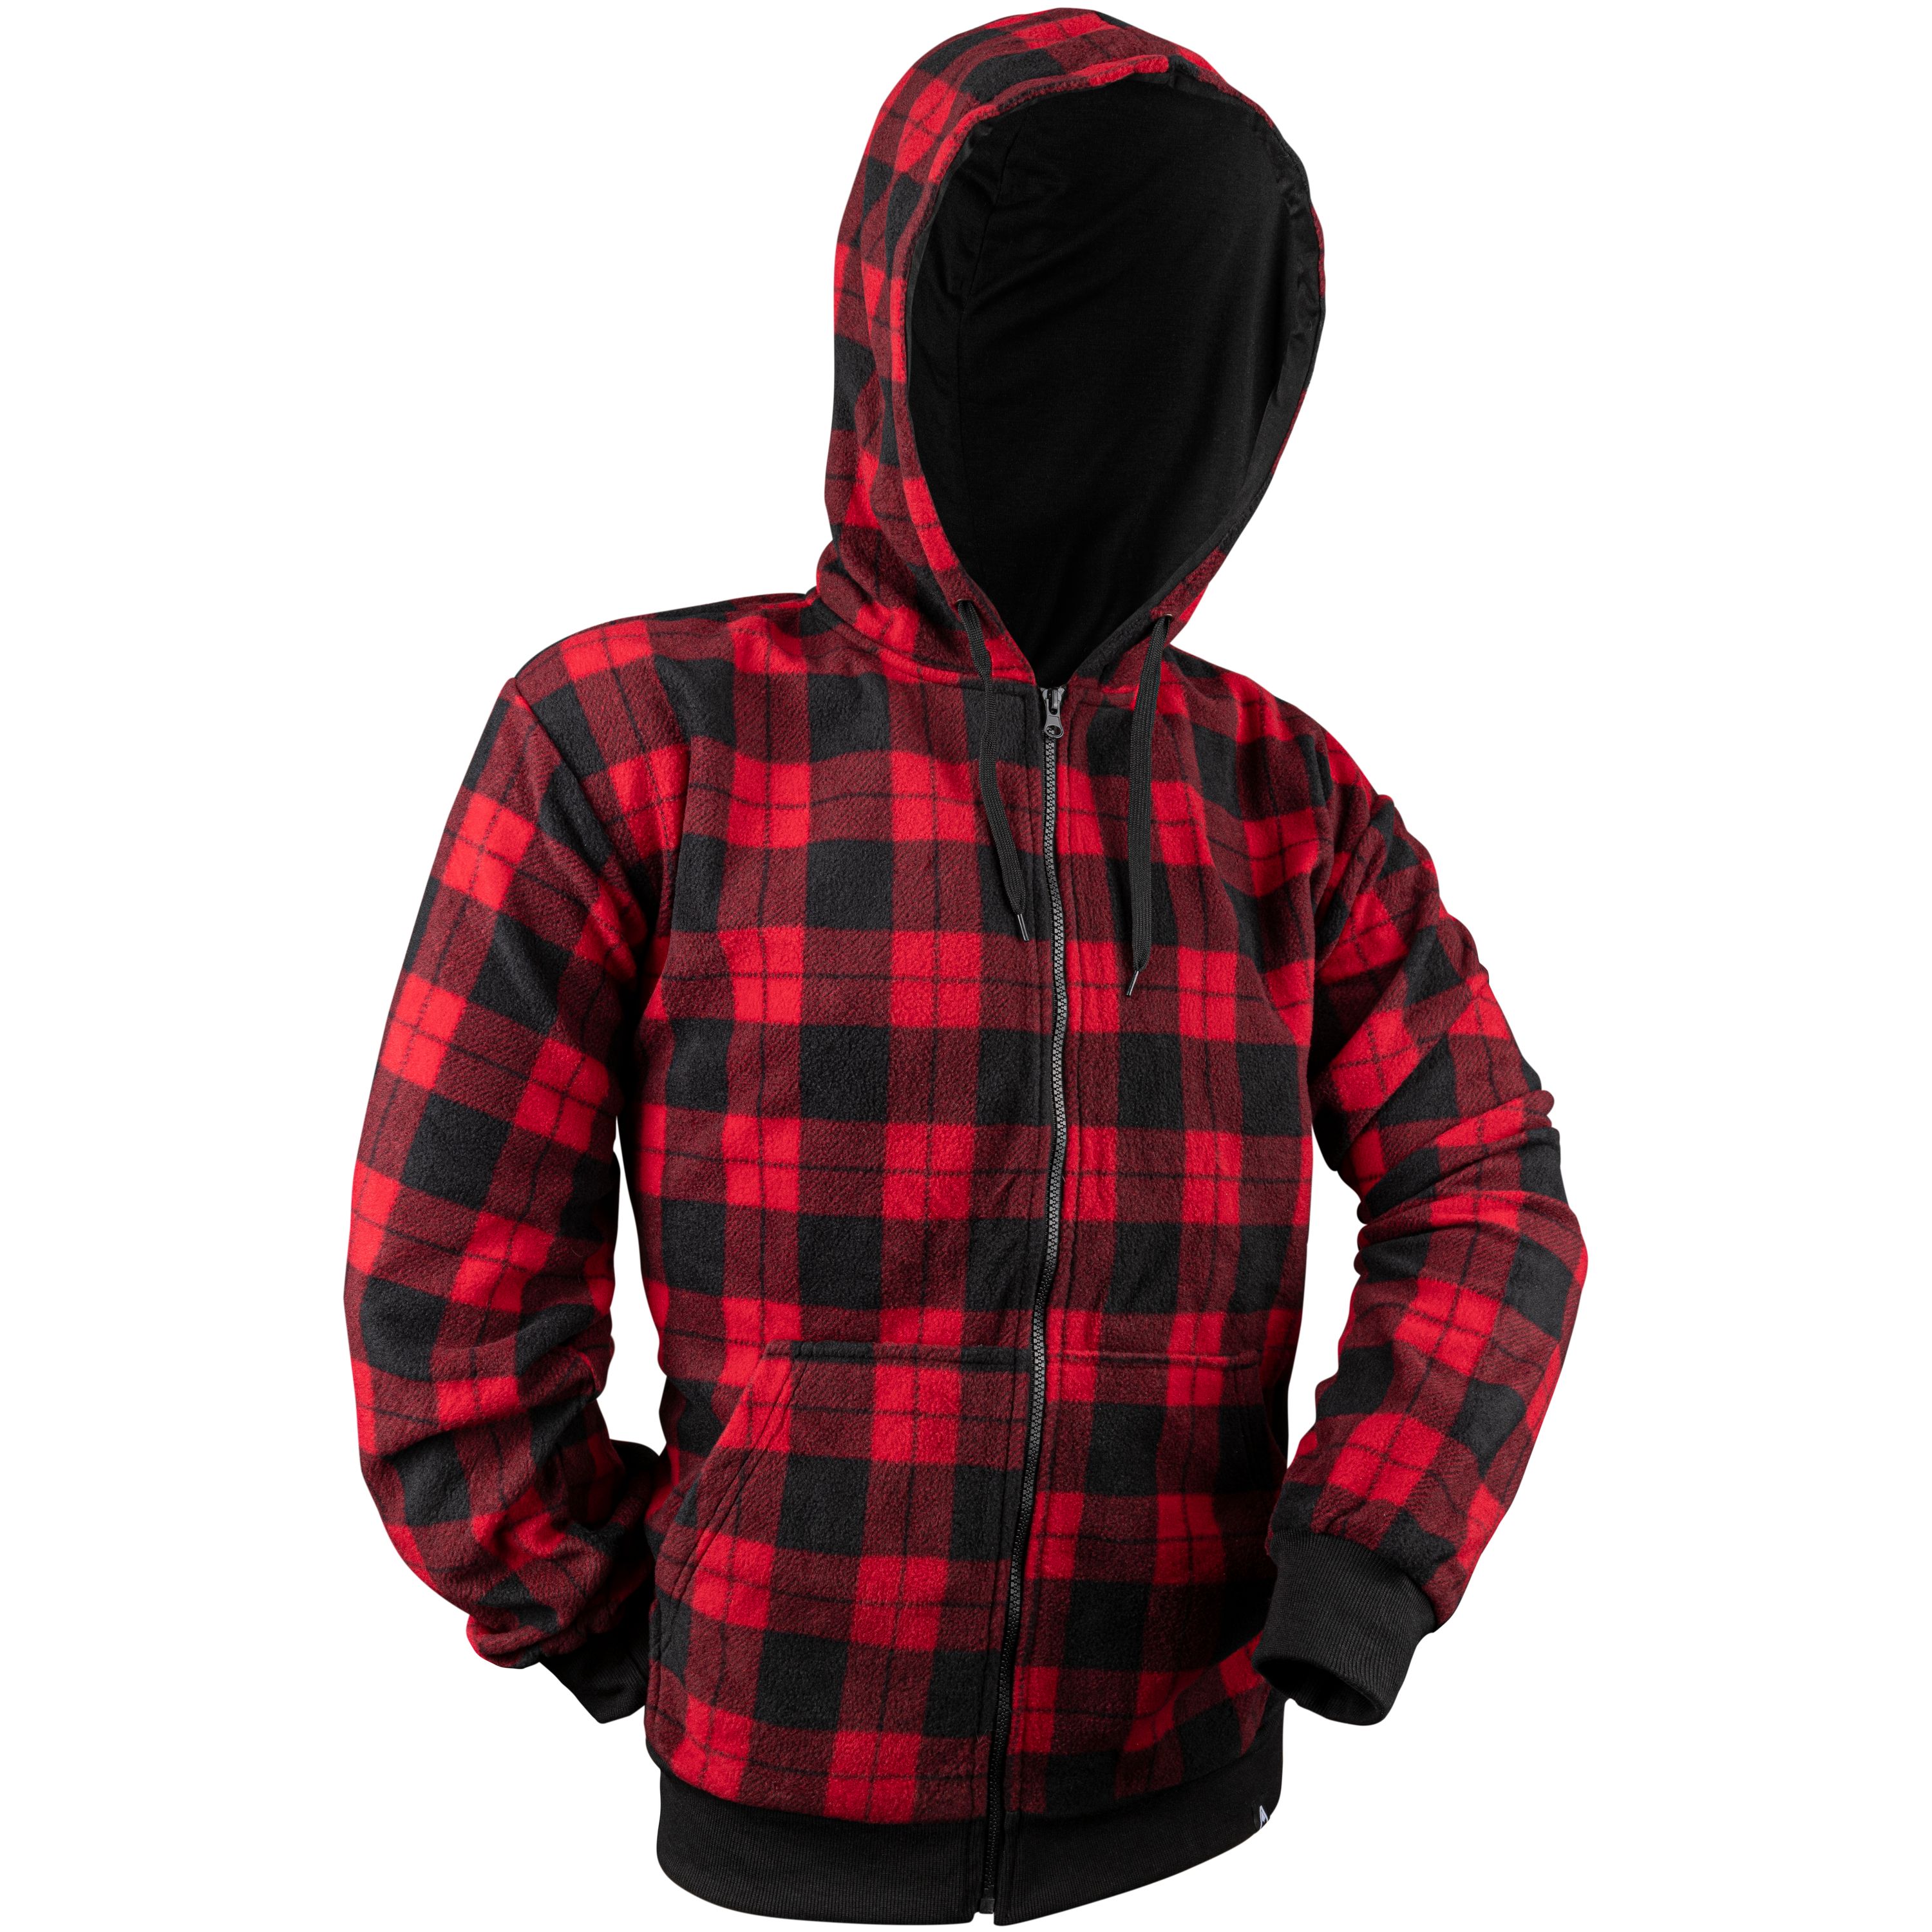 Checkered hoodie - Men's